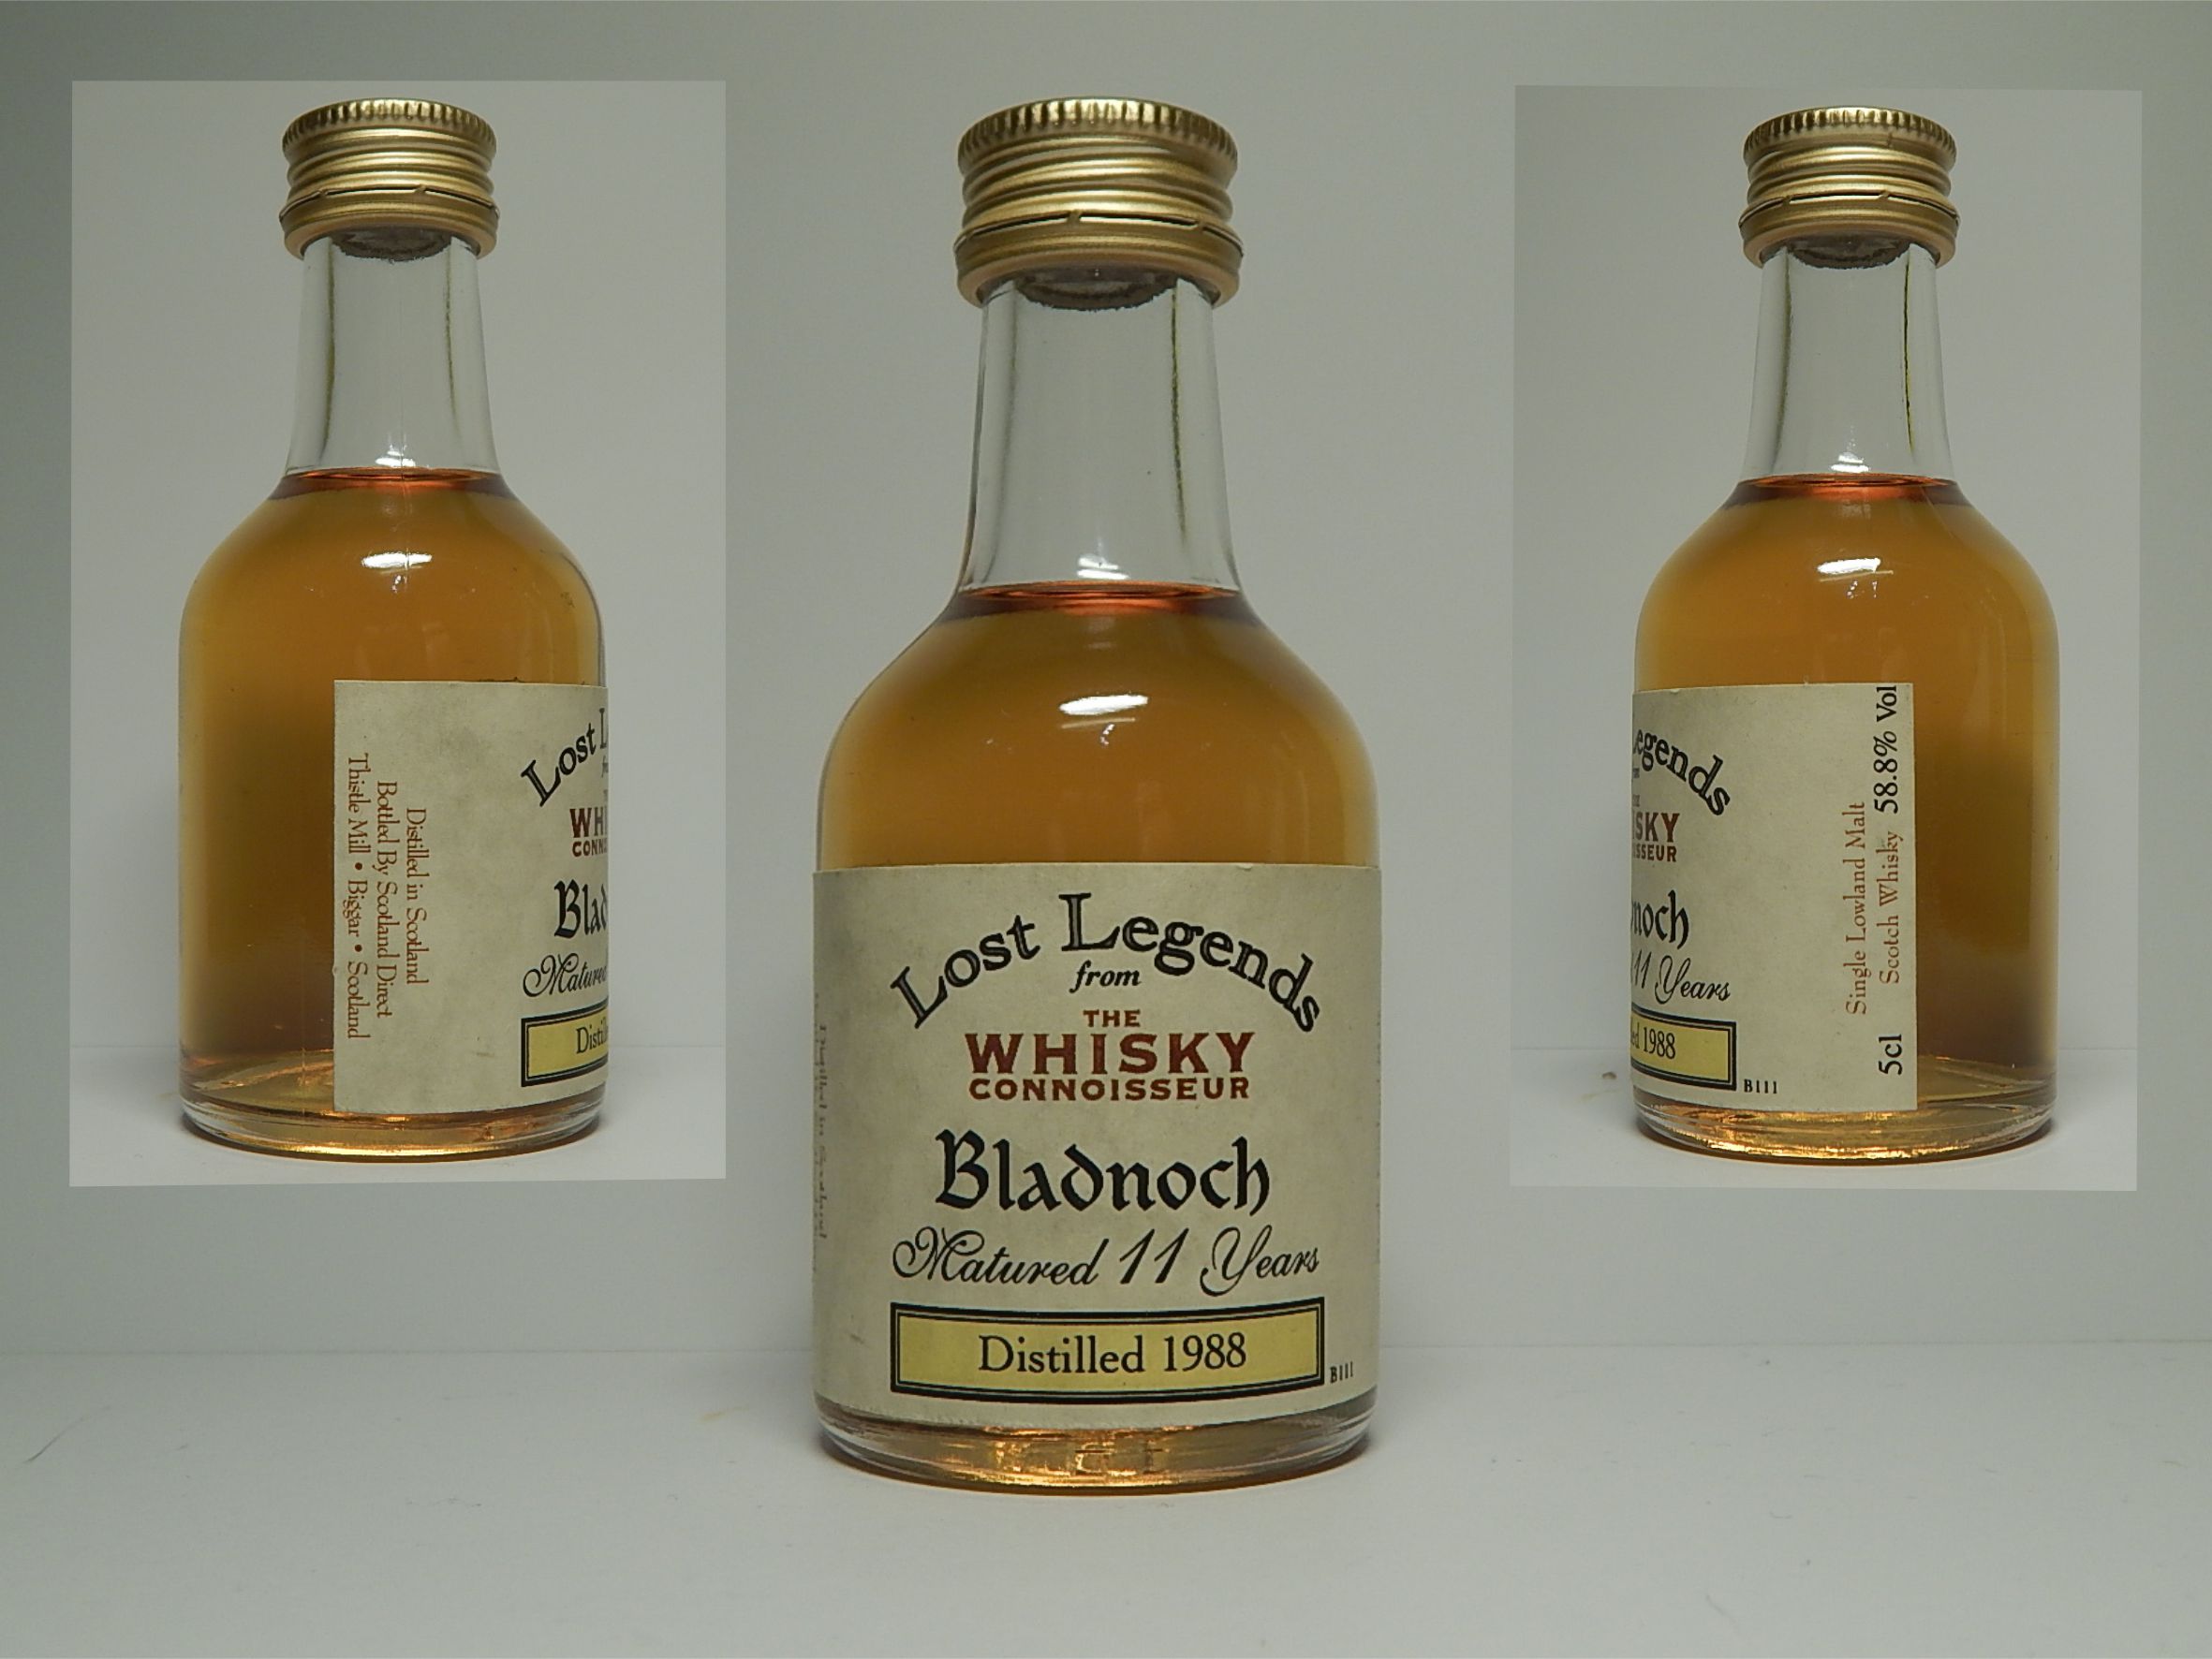 SLMSW 11yo 19885 "Whisky Connoisseur Lost Legends" 5cl 58,86%Vol